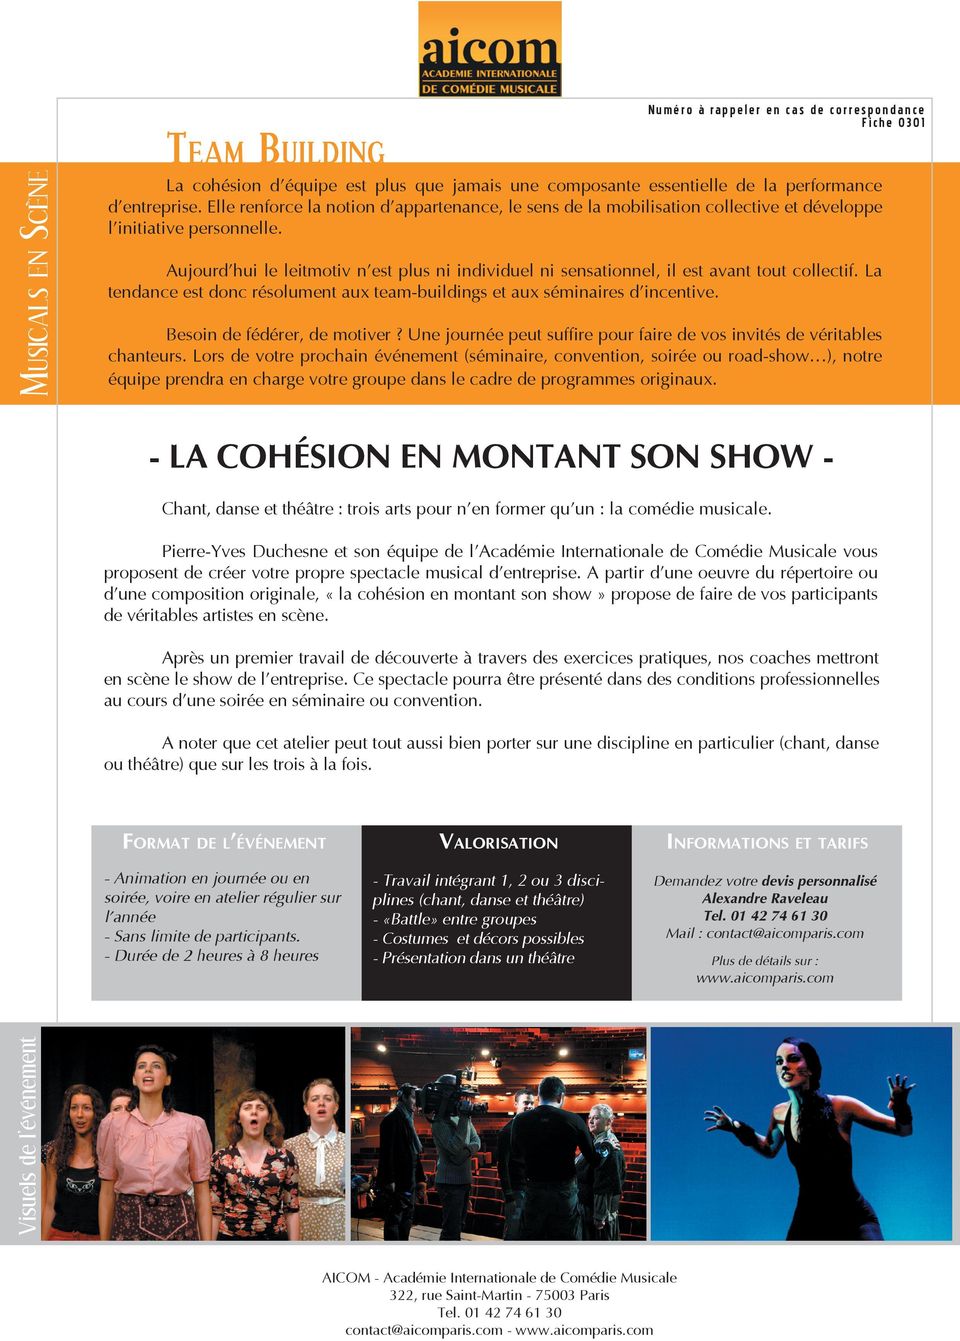 Pierre-Yves Duchesne et son équipe de l Académie Internationale de Comédie Musicale vous proposent de créer votre propre spectacle musical d entreprise.